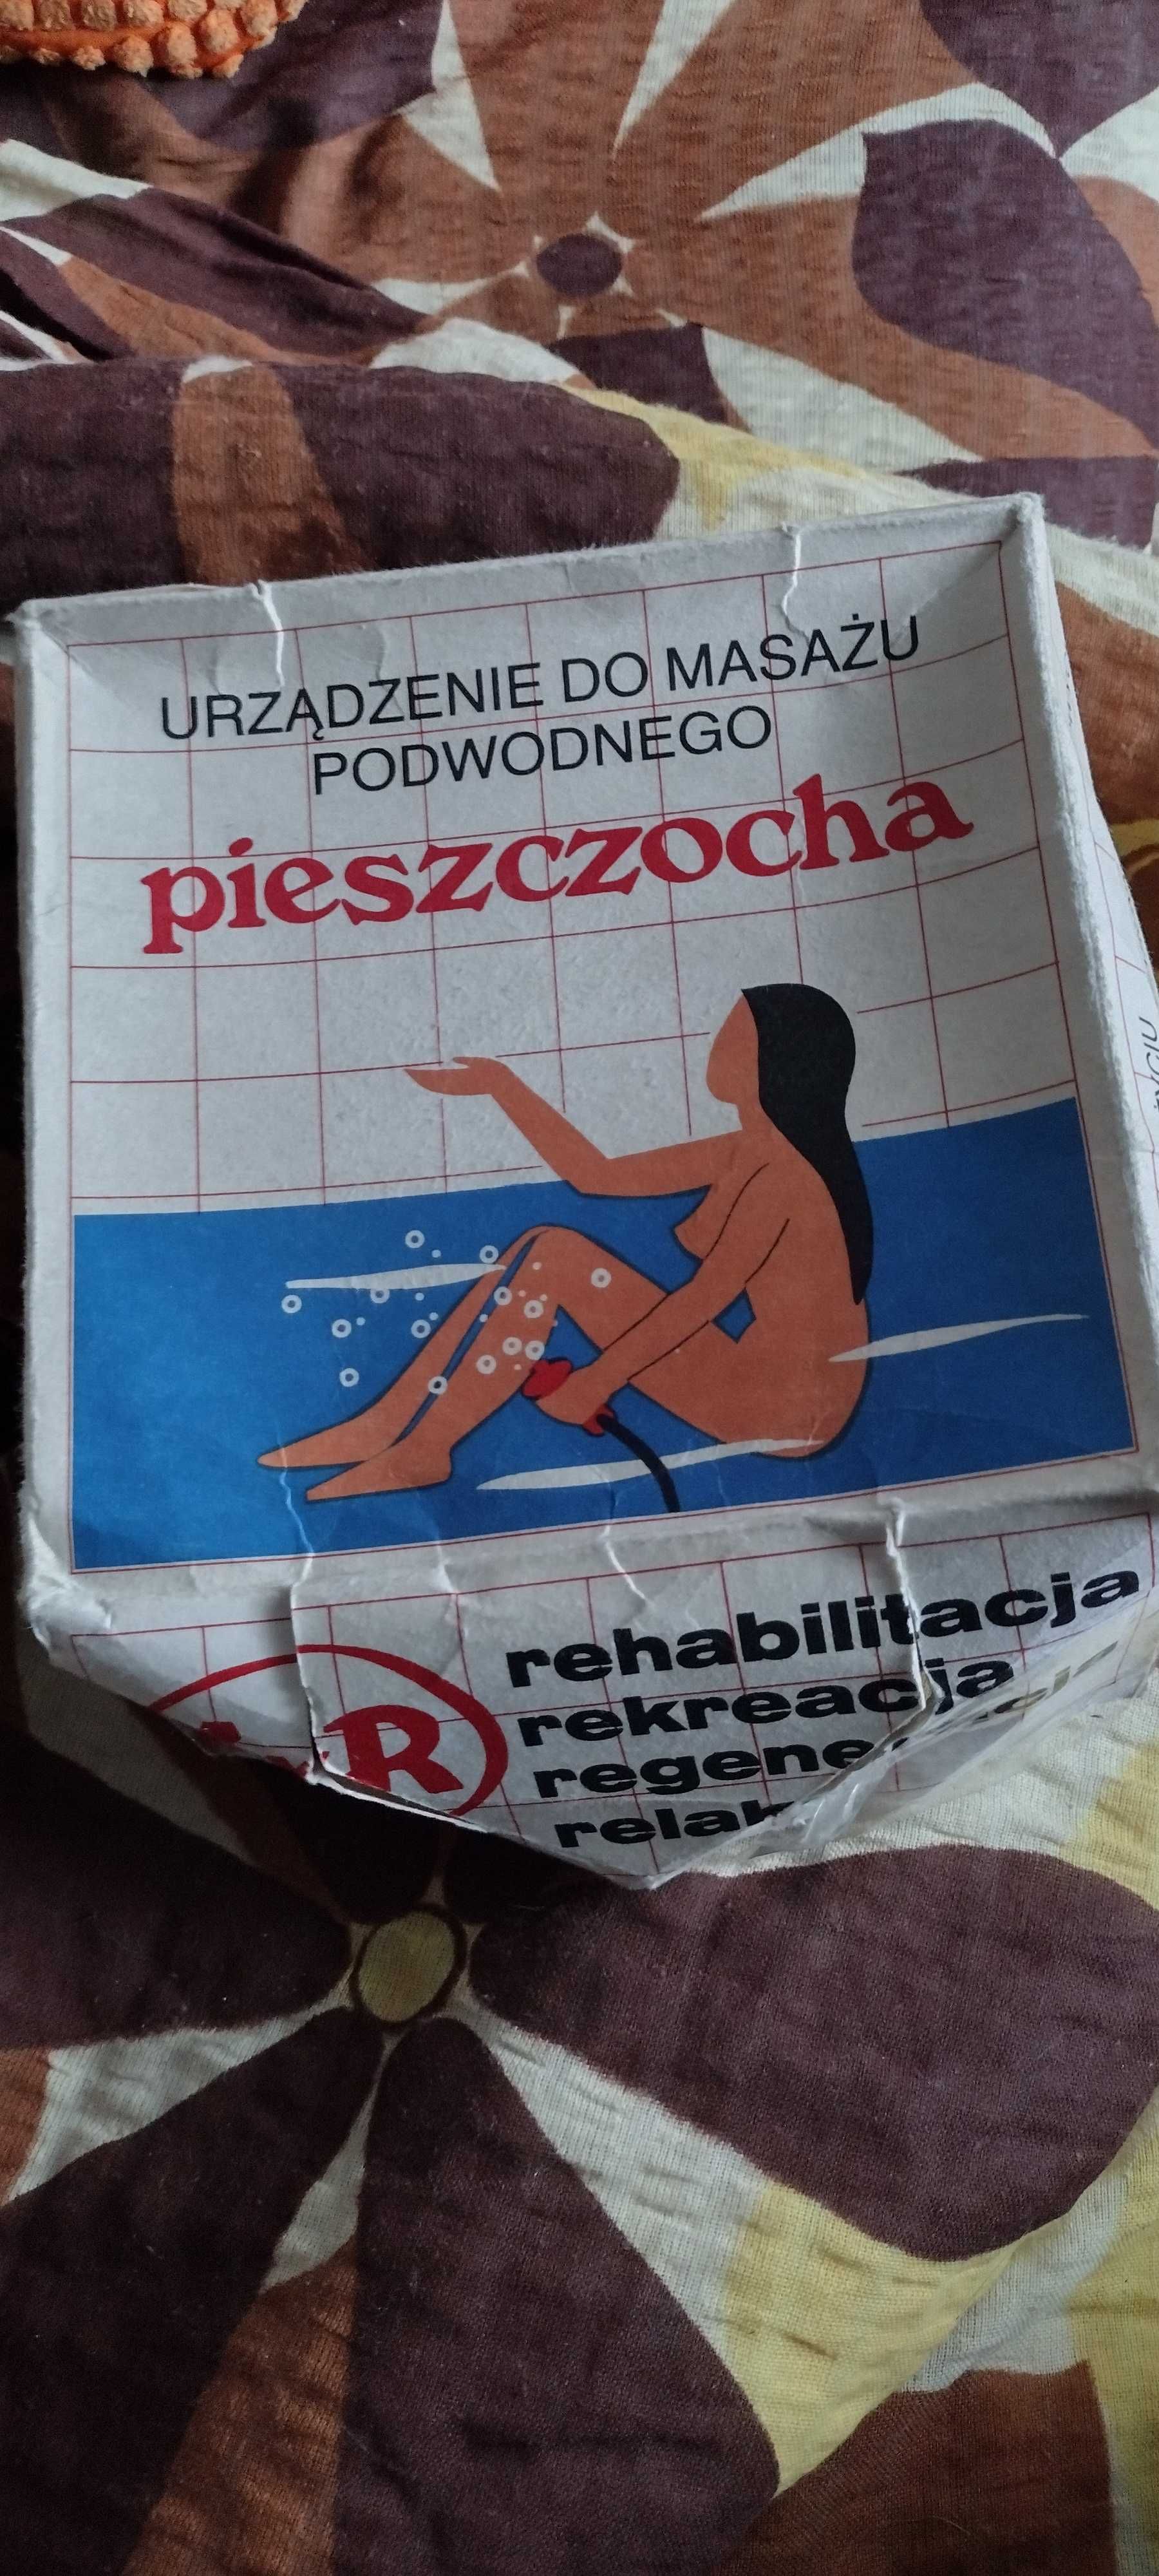 Kolekcjonerskie urządzenie do masażu podwodnego Pieszczocha PRL